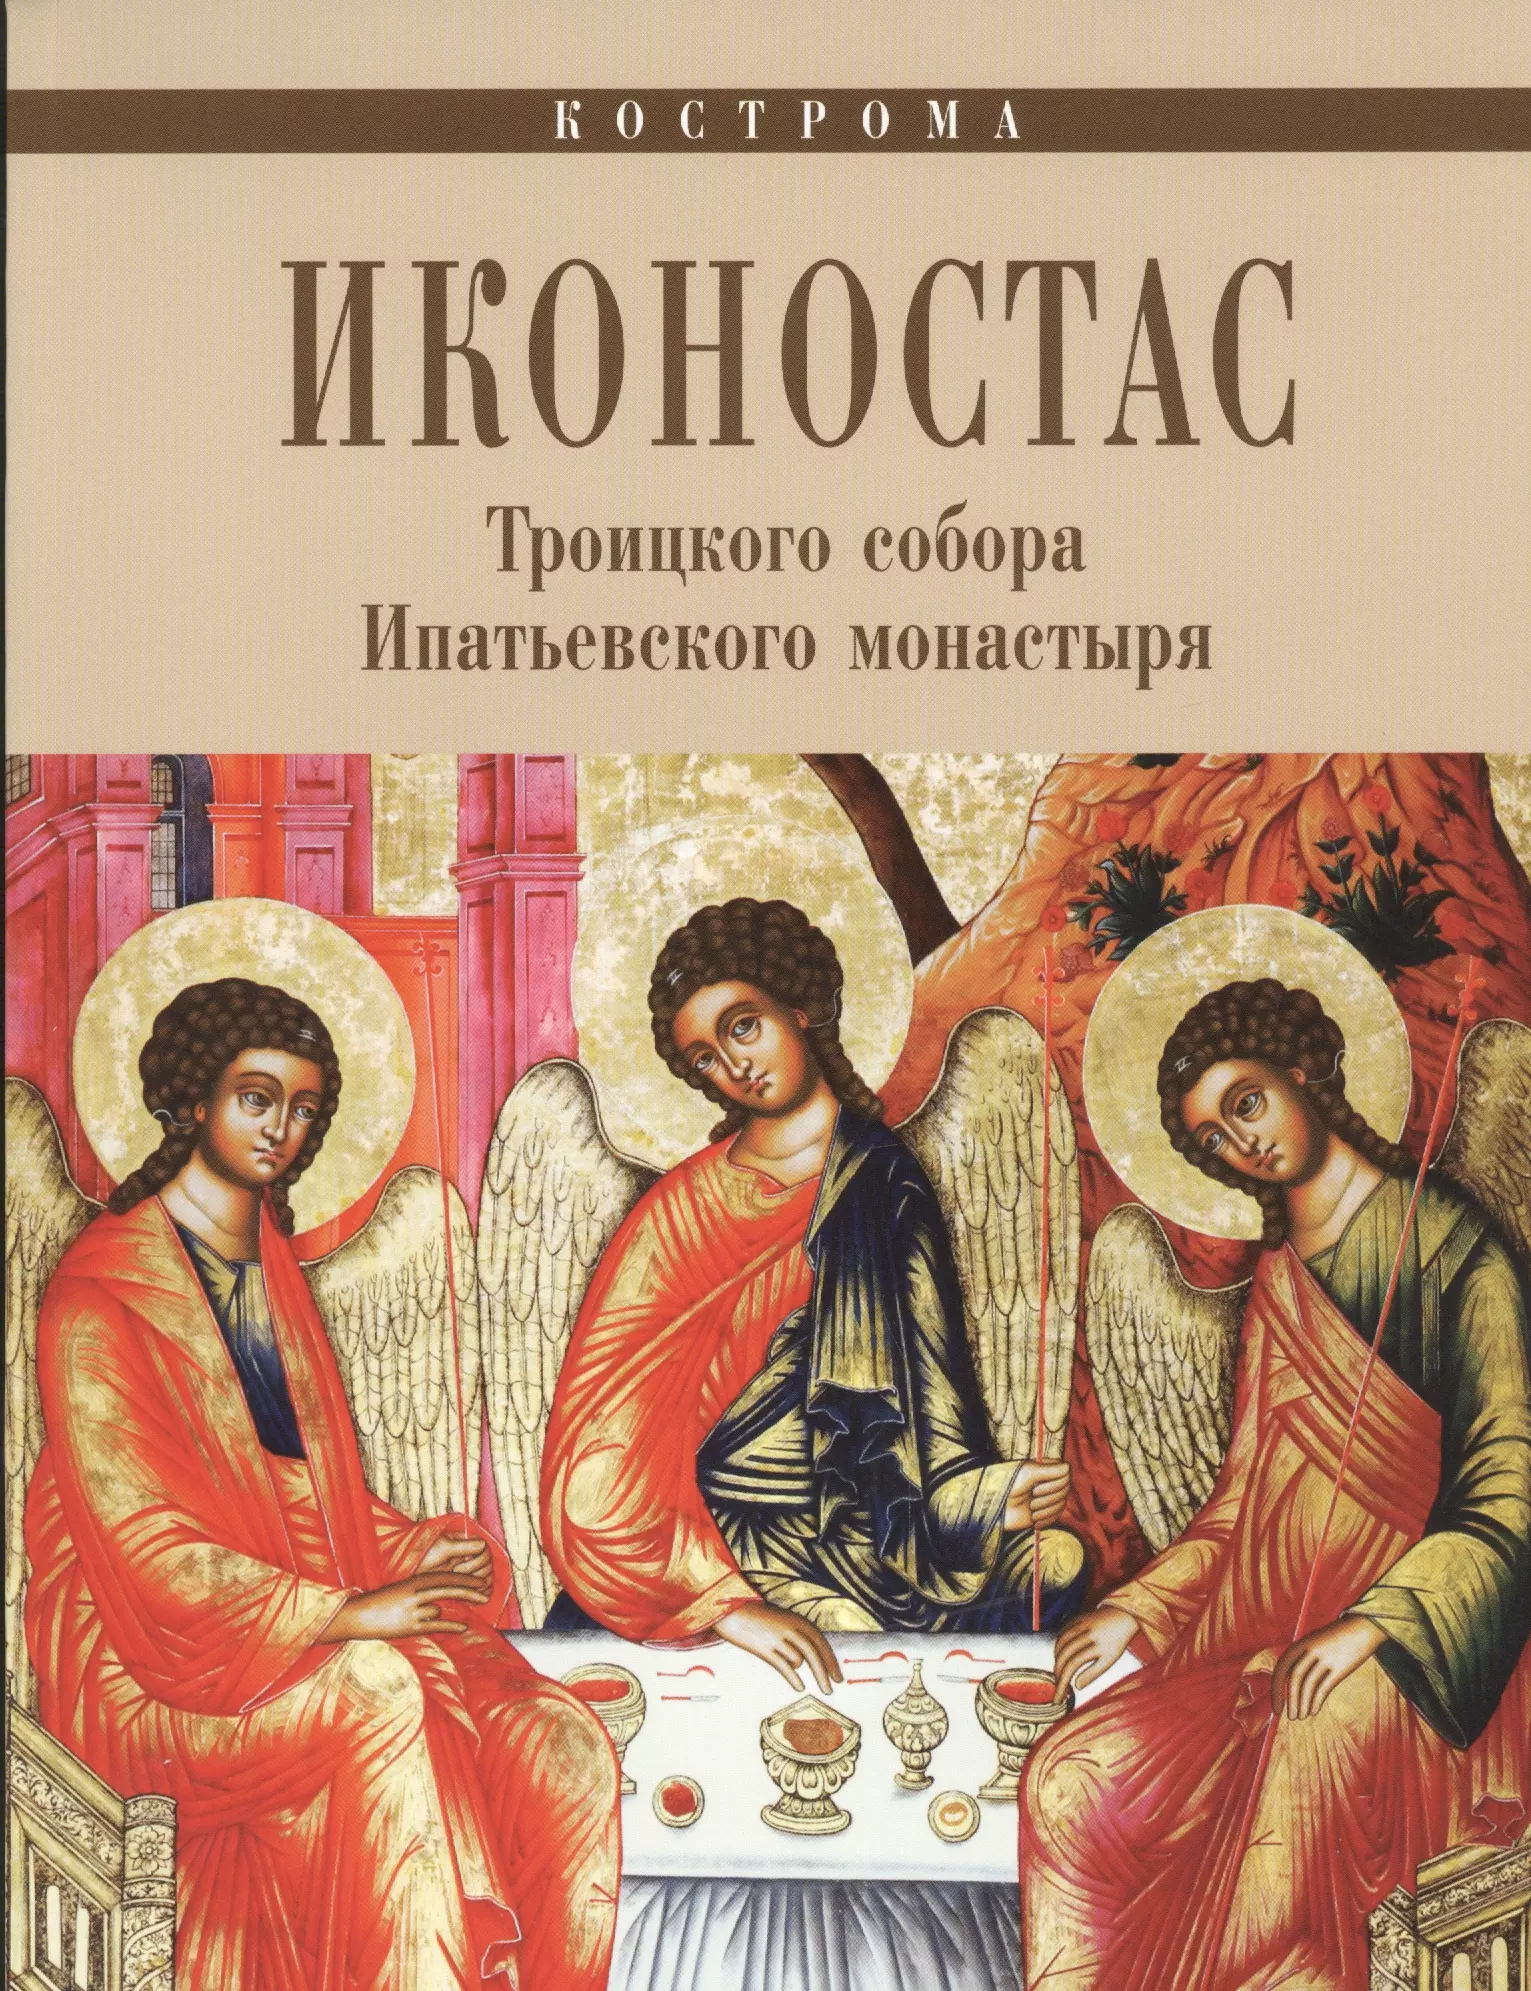  - Иконостас Троицкого собора Ипатьевского монастыря (мЗнИкРосс)